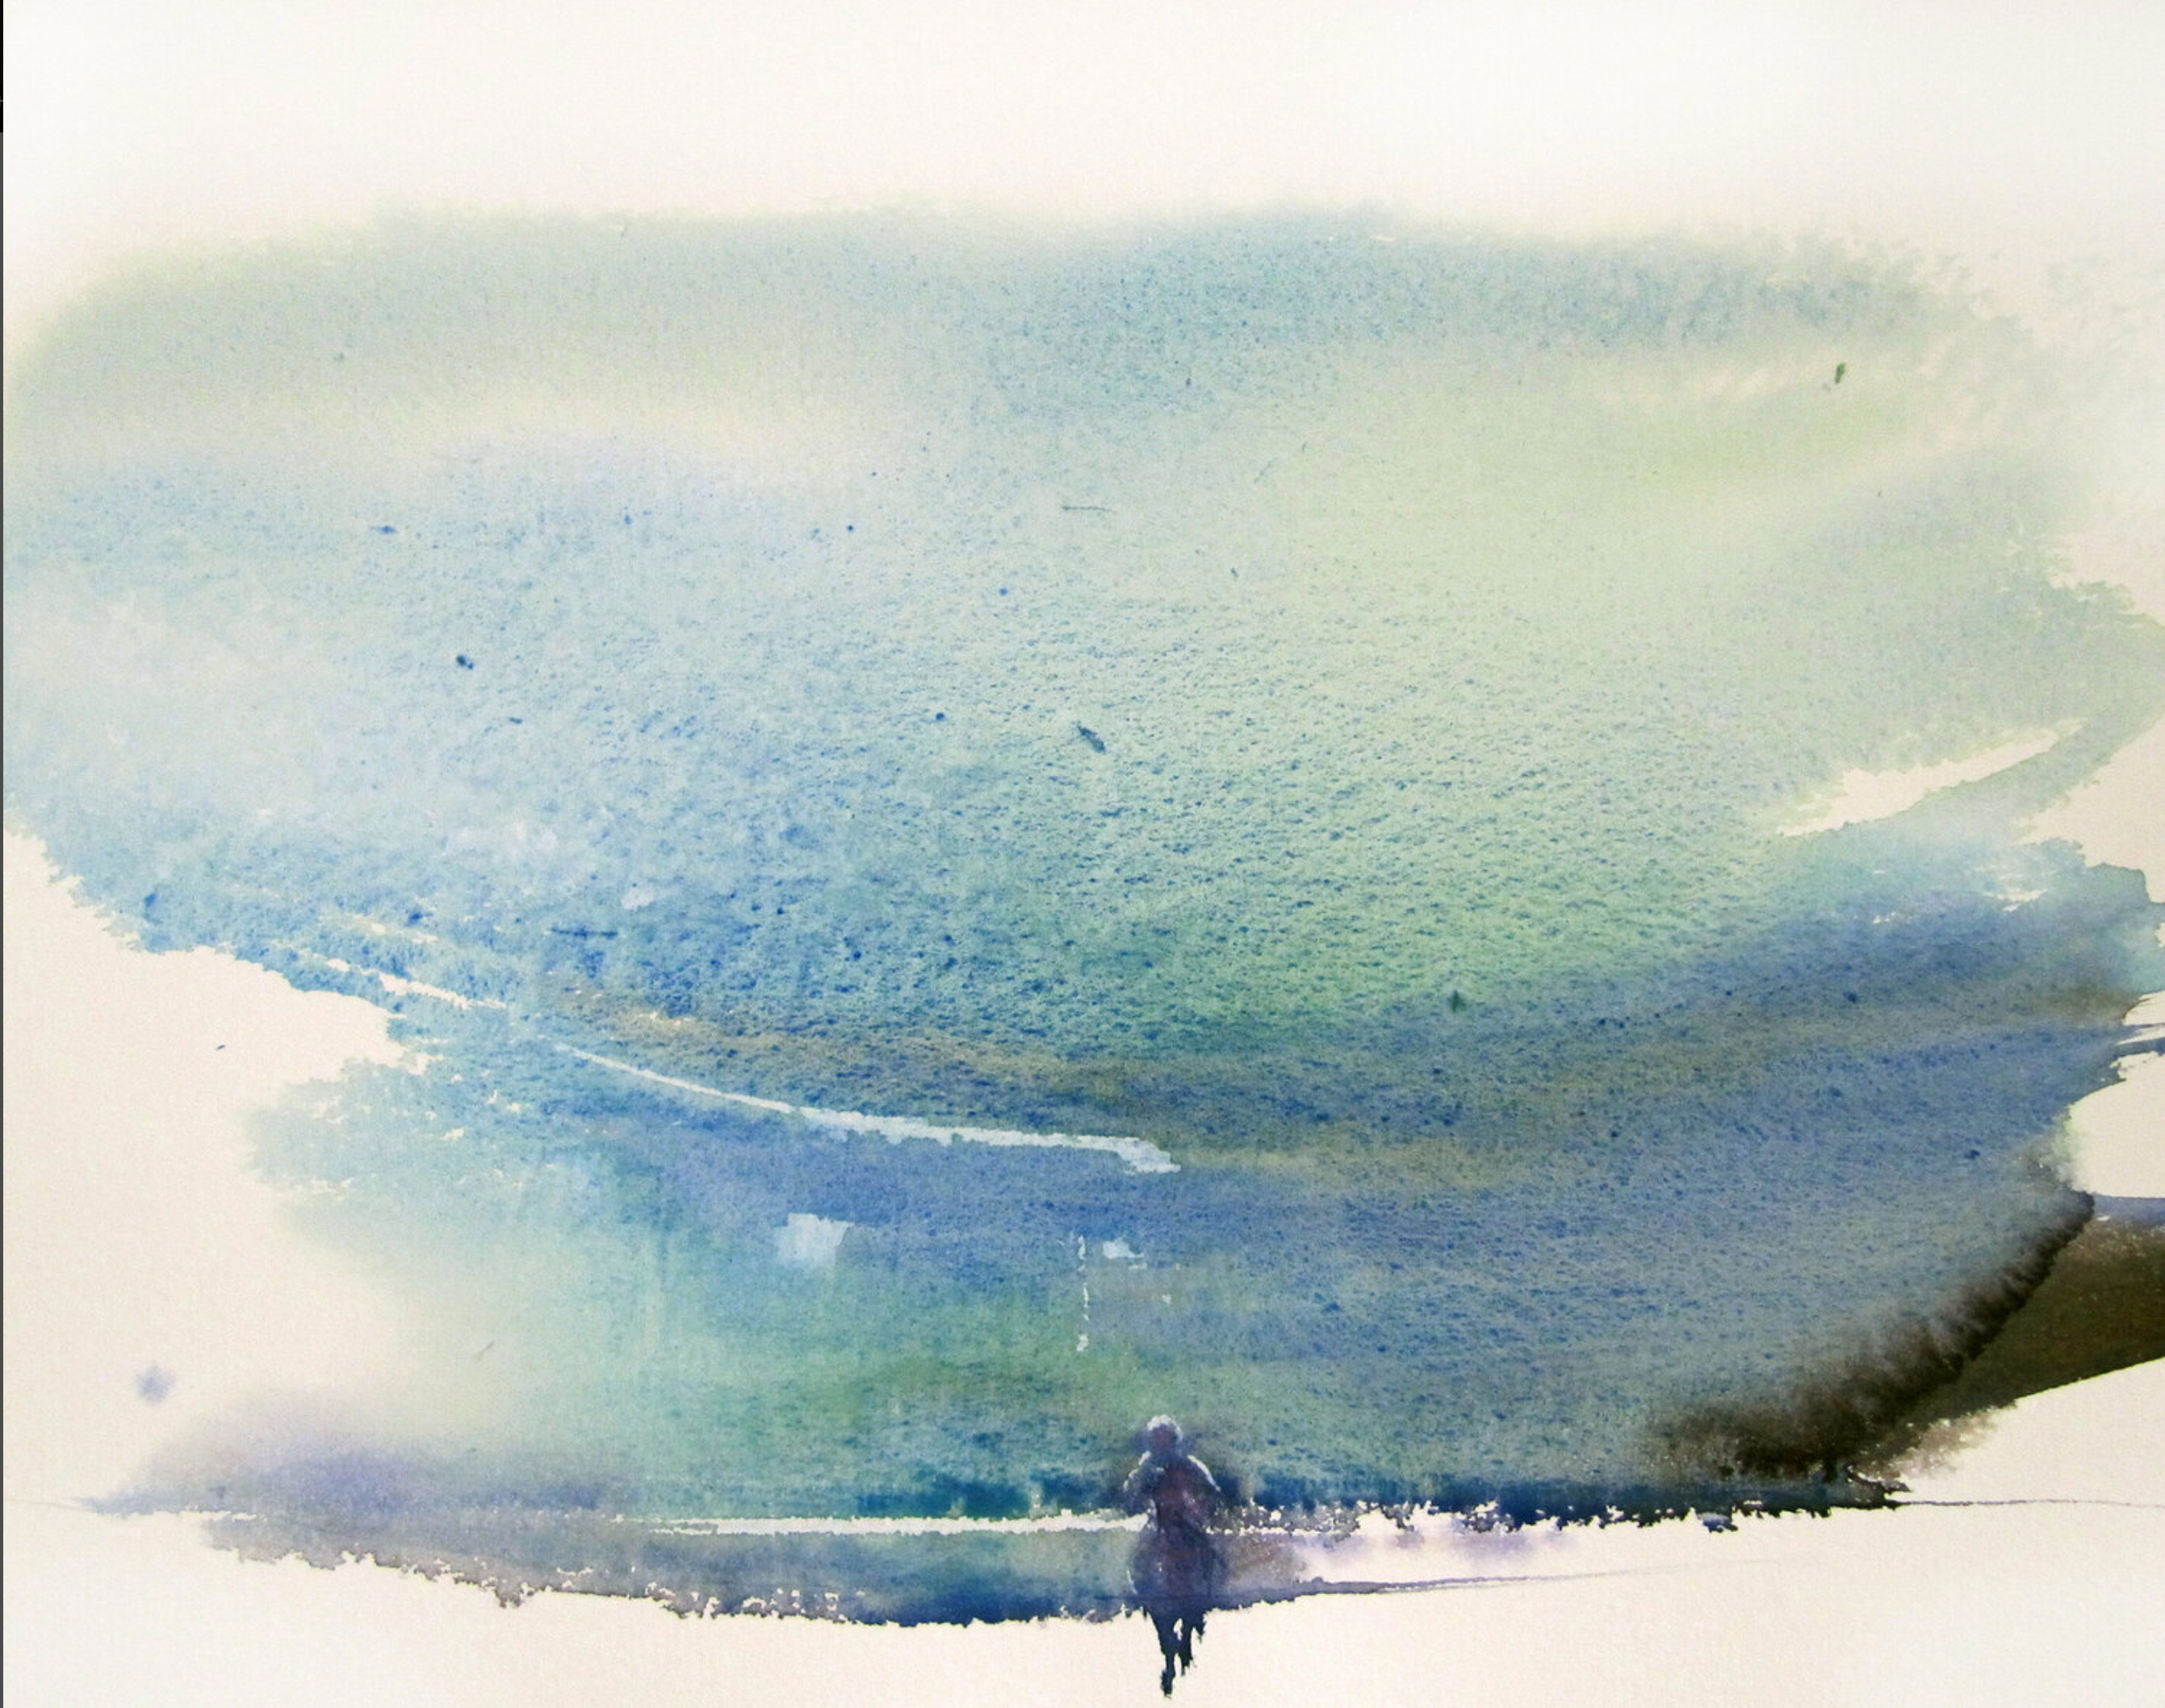 Dans la plaine" de Sylvia Baldeva montre un paysage, campagne, plaine, cavalier, ciel, expressionnisme, aquarelle sur papier Canson®. Couleur bleu, turquoise, vert.